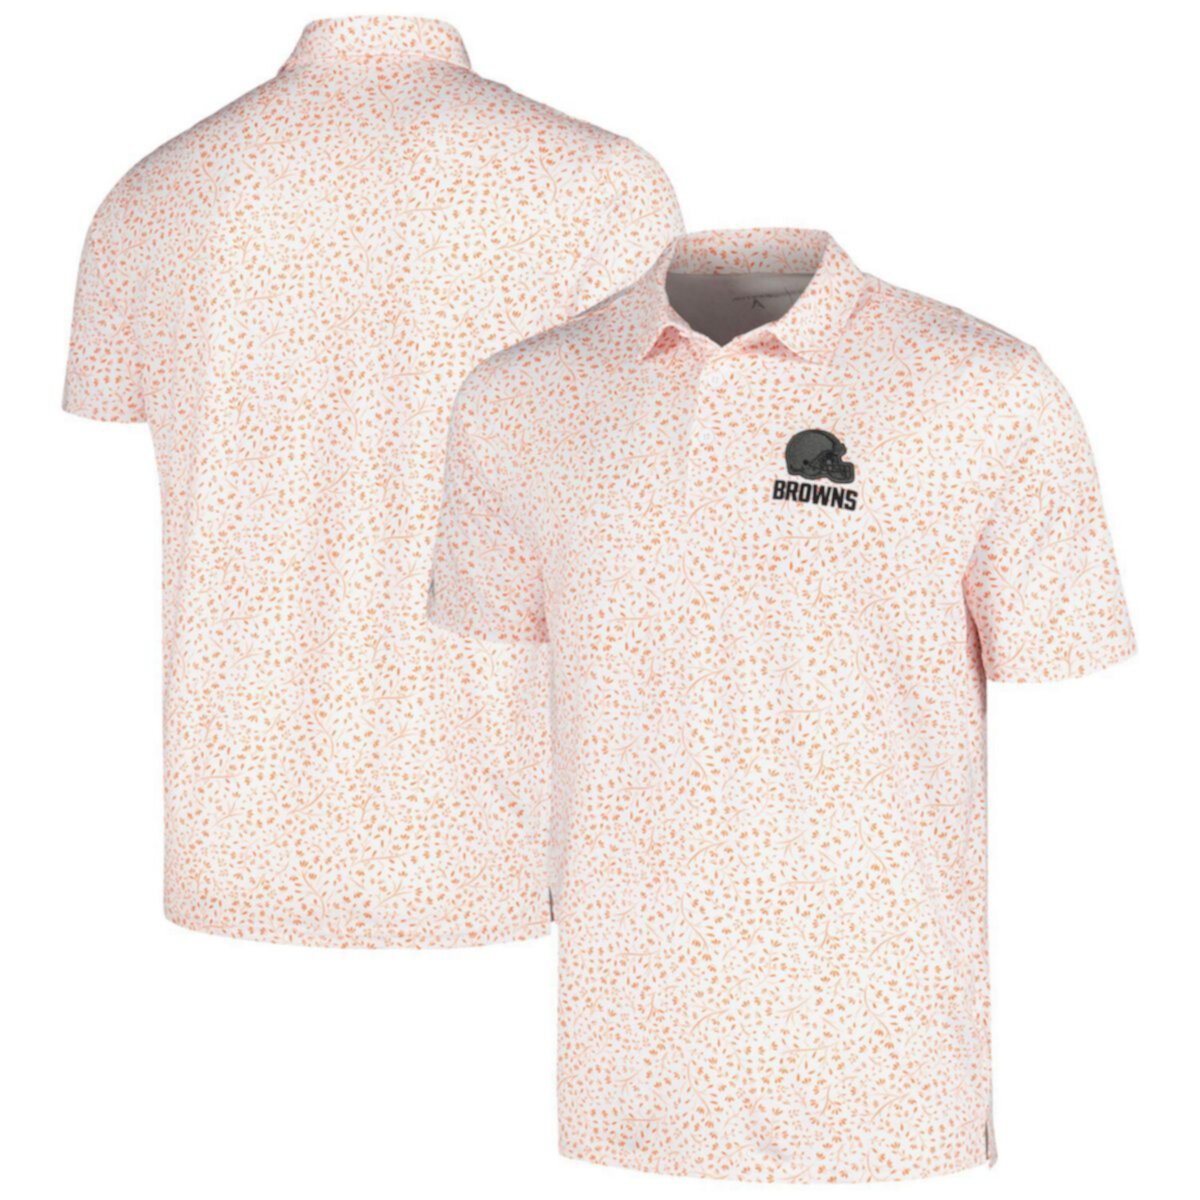 Мужская рубашка-поло Antigua белого/оранжевого цвета Cleveland Browns Motion Antigua